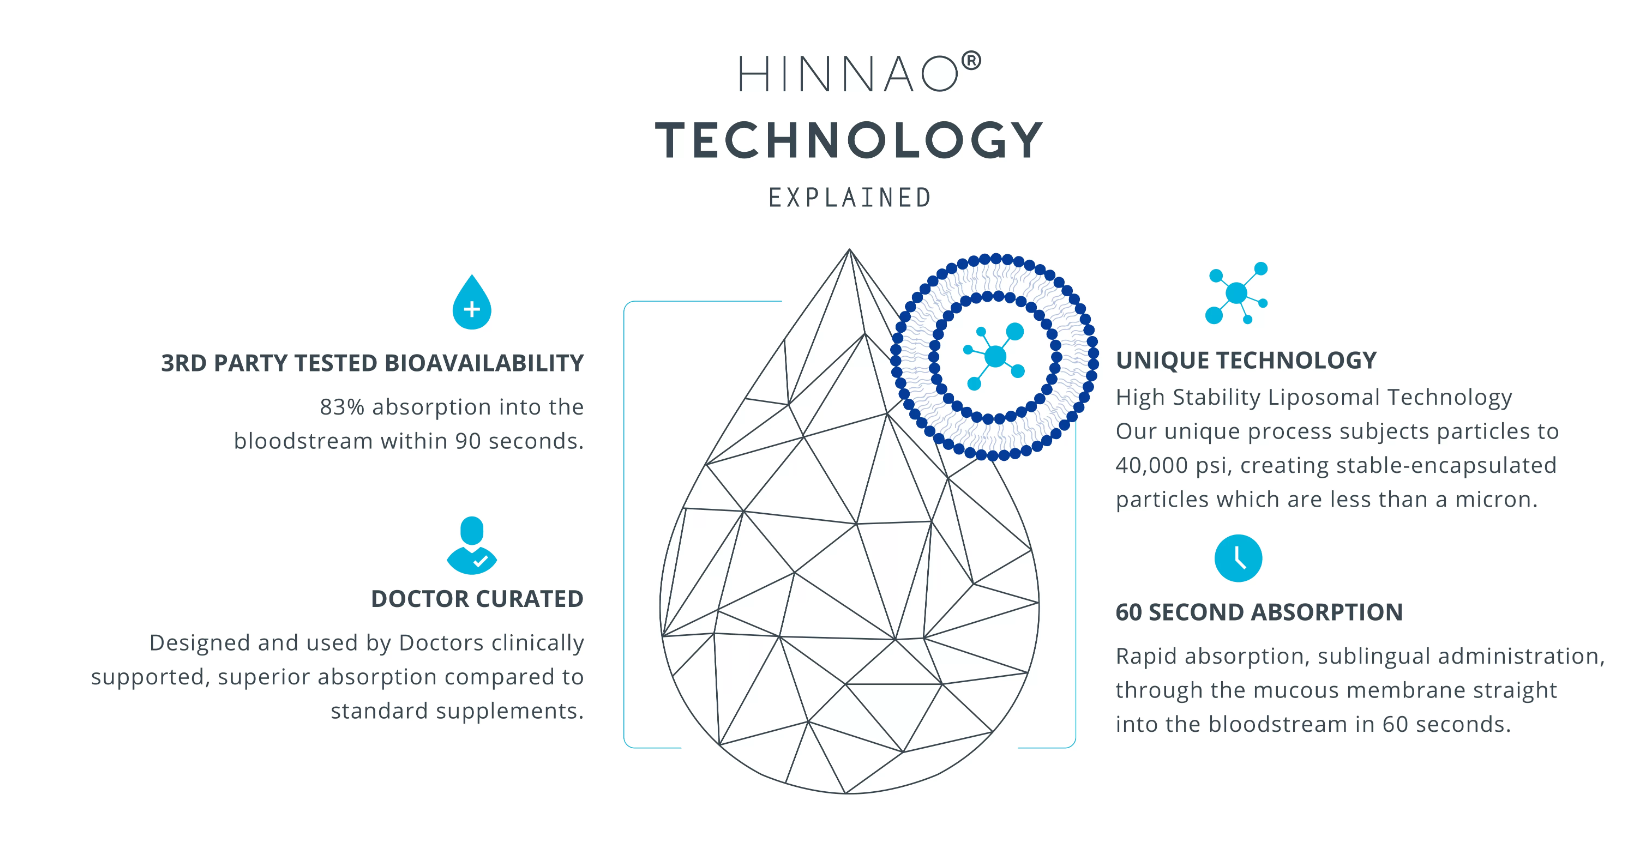 Hinnao Technology